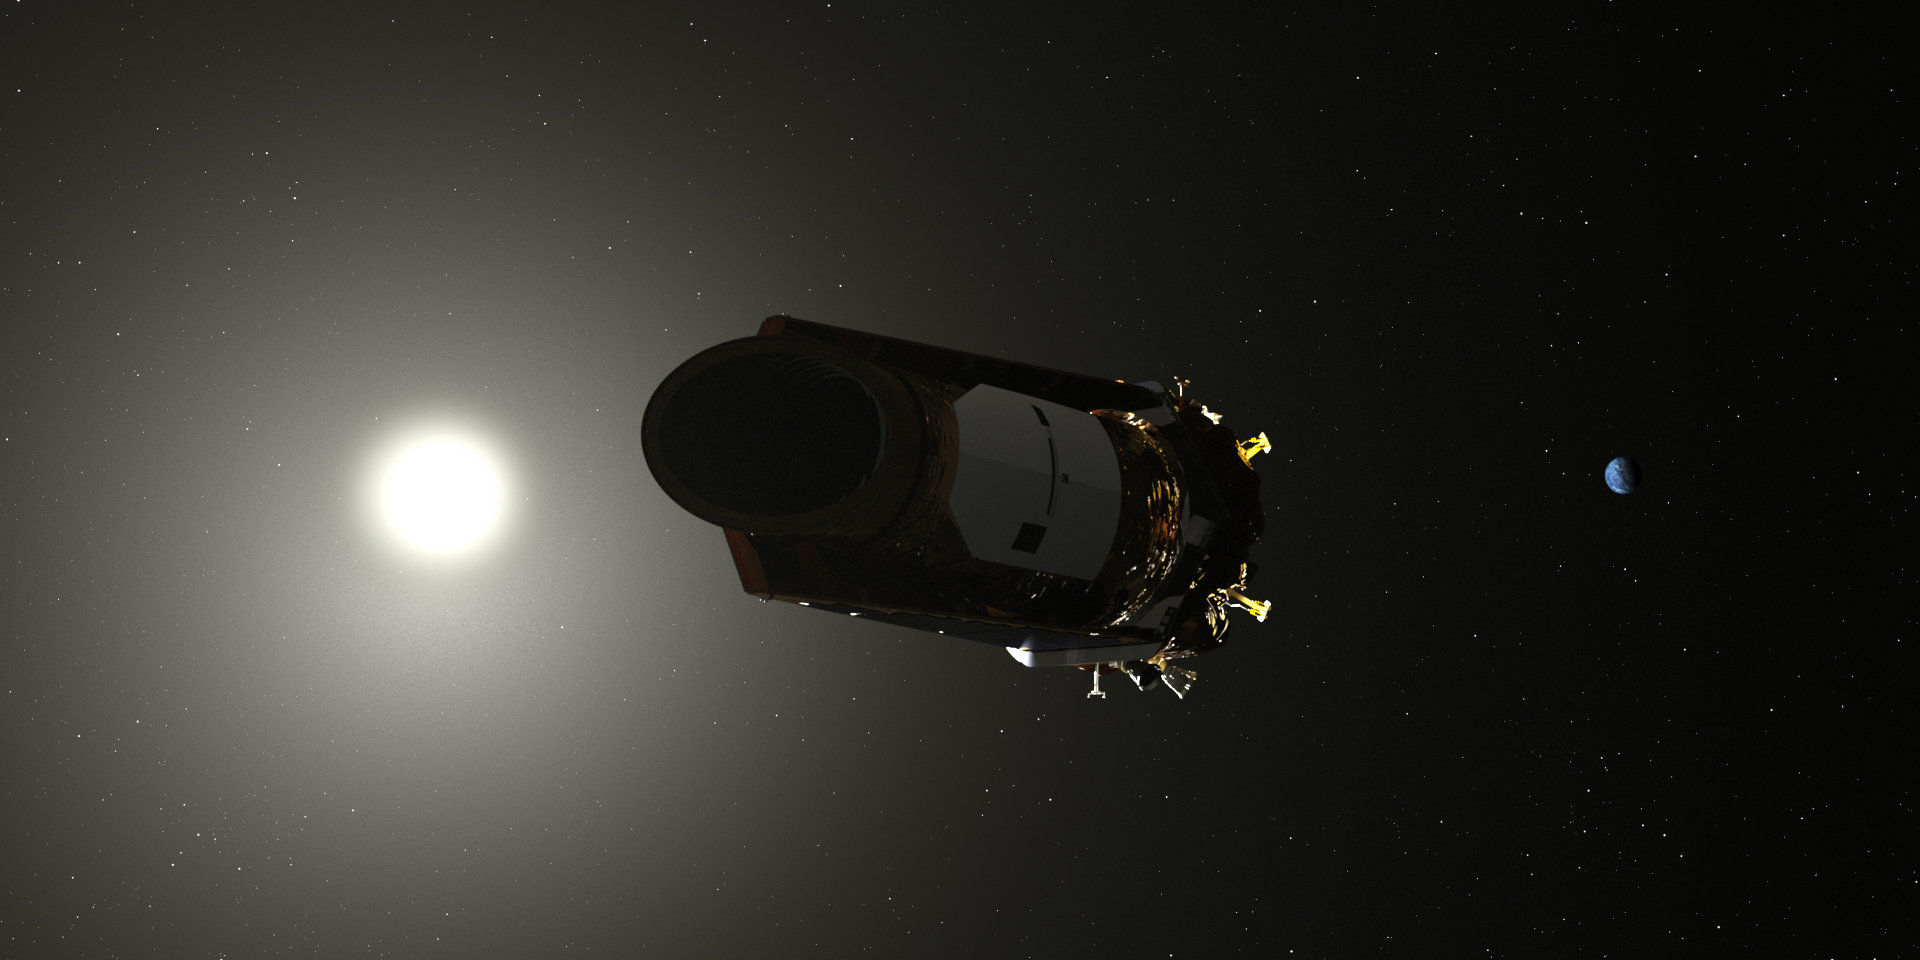 У космического телескопа Kepler заканчиваются запасы горючего